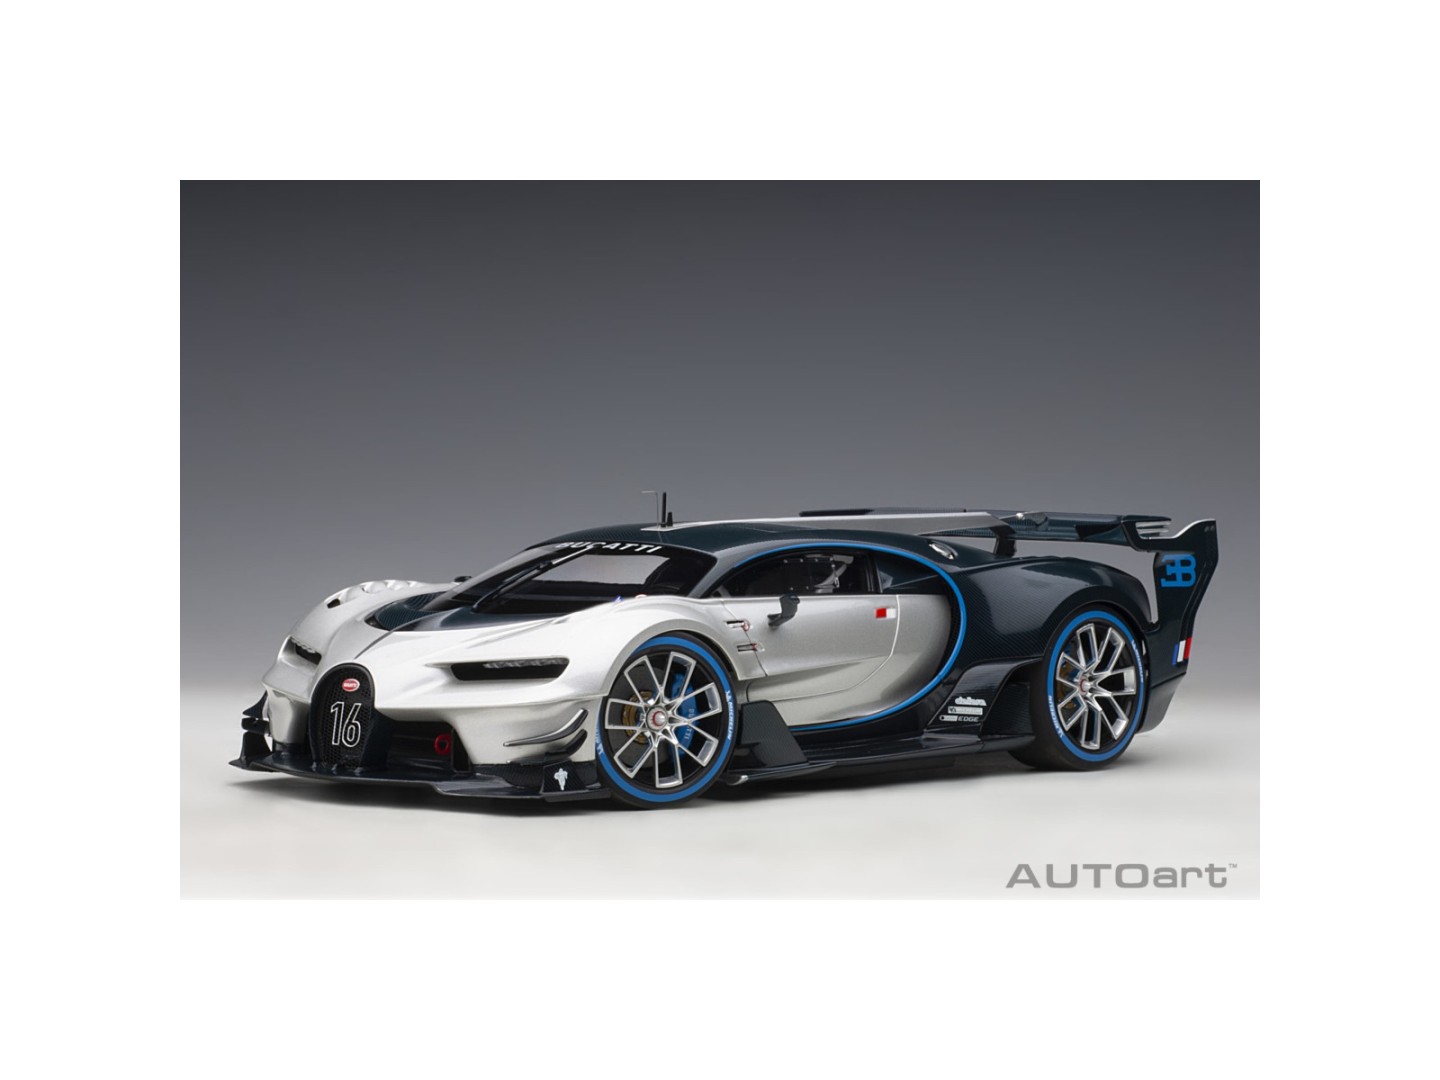 Marketplace - Bugatti Vision GT 2015 Argent/Bleu Carbone  - Autoart - 1:18